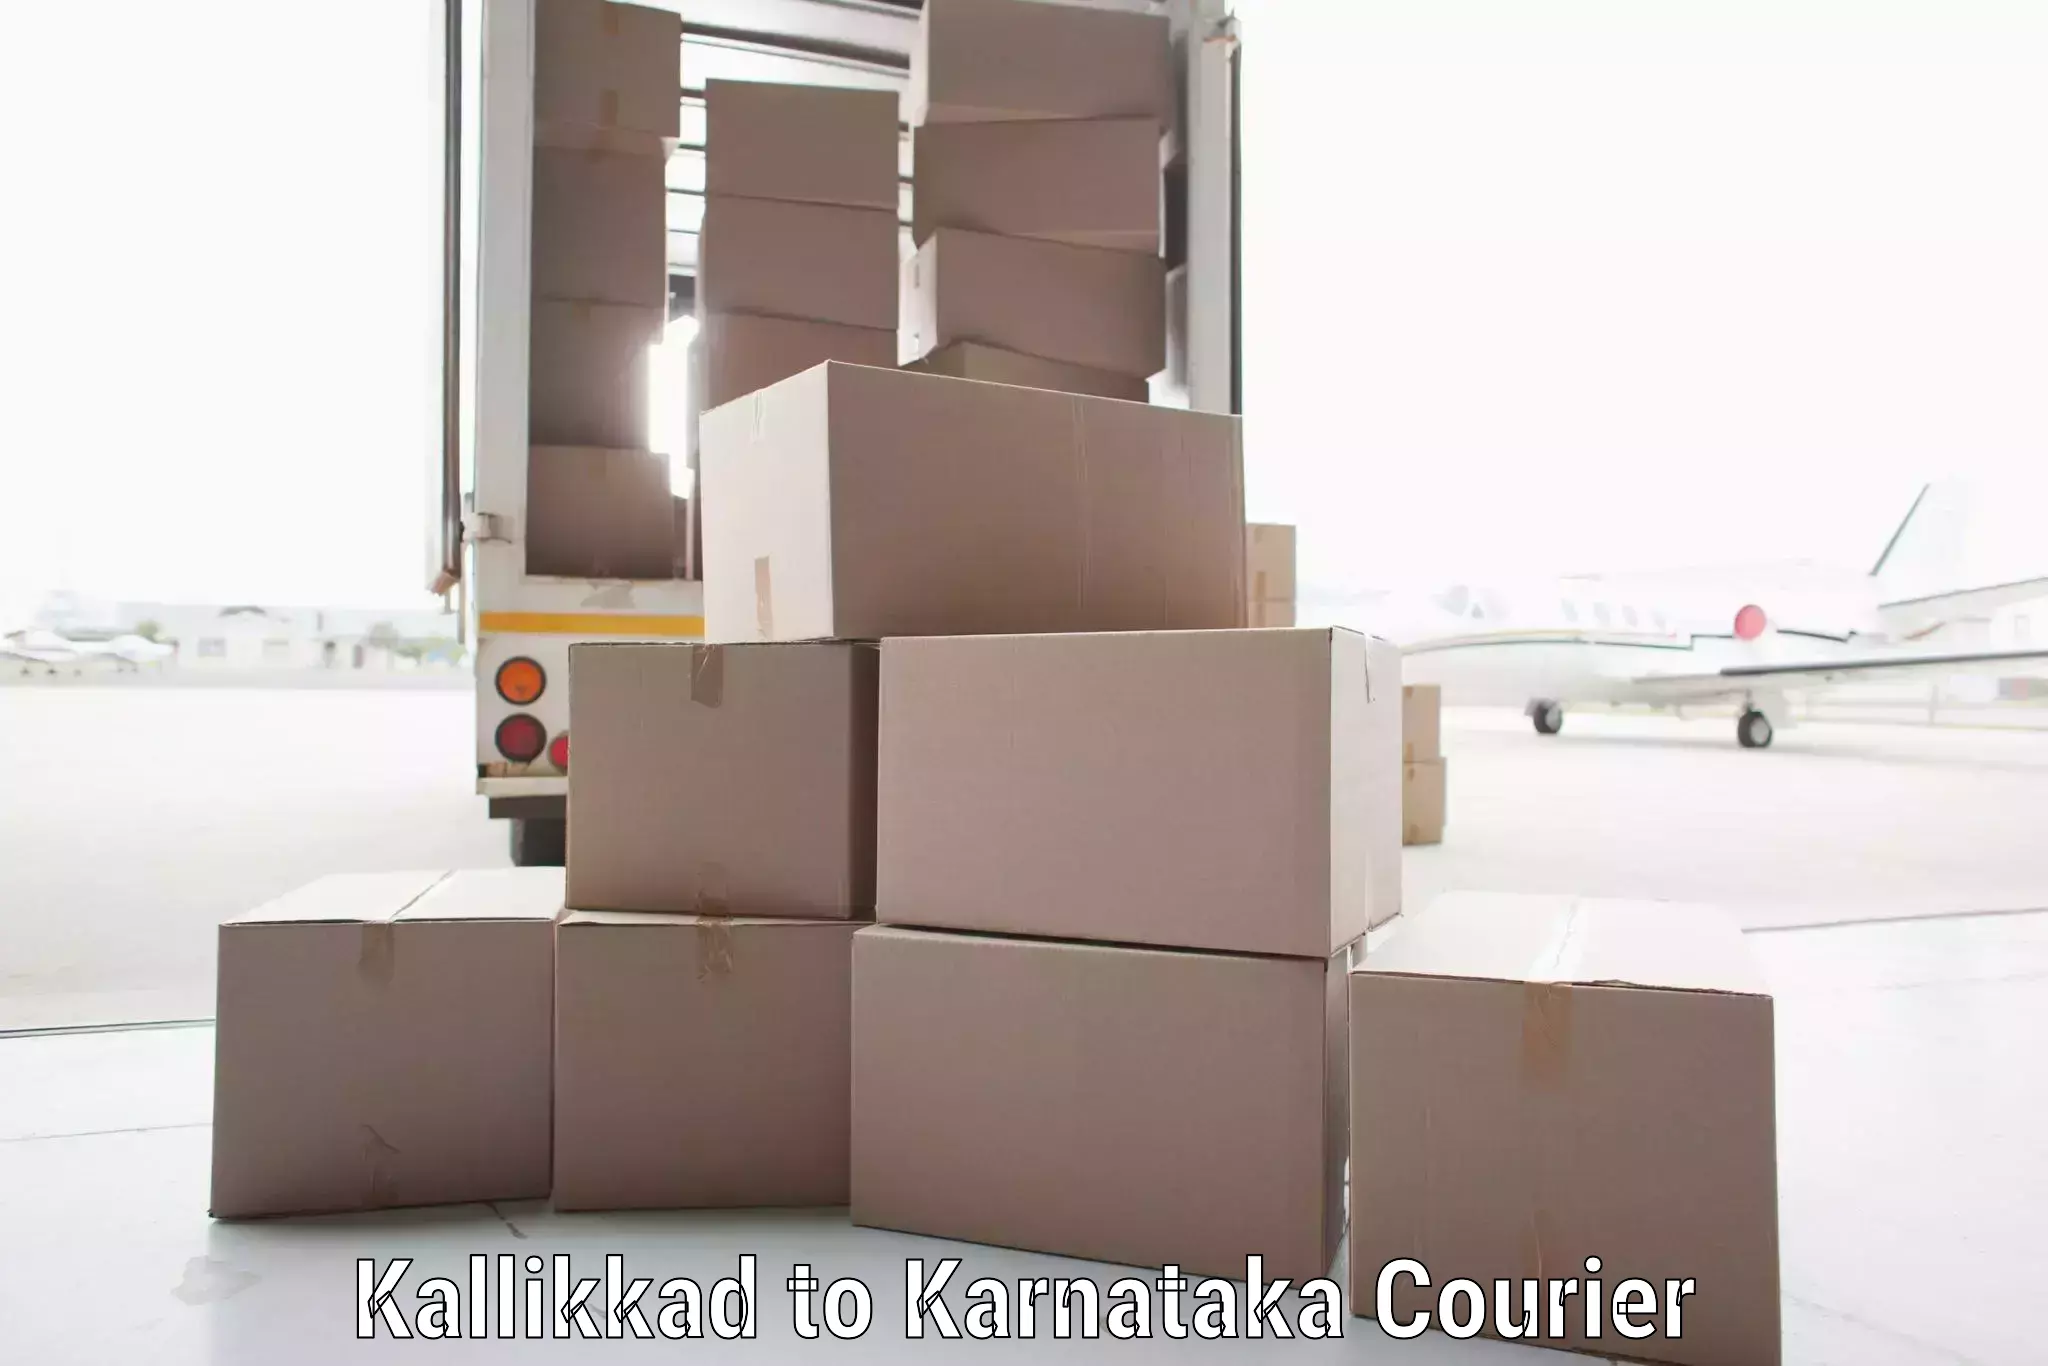 Customizable shipping options Kallikkad to Yaragatti